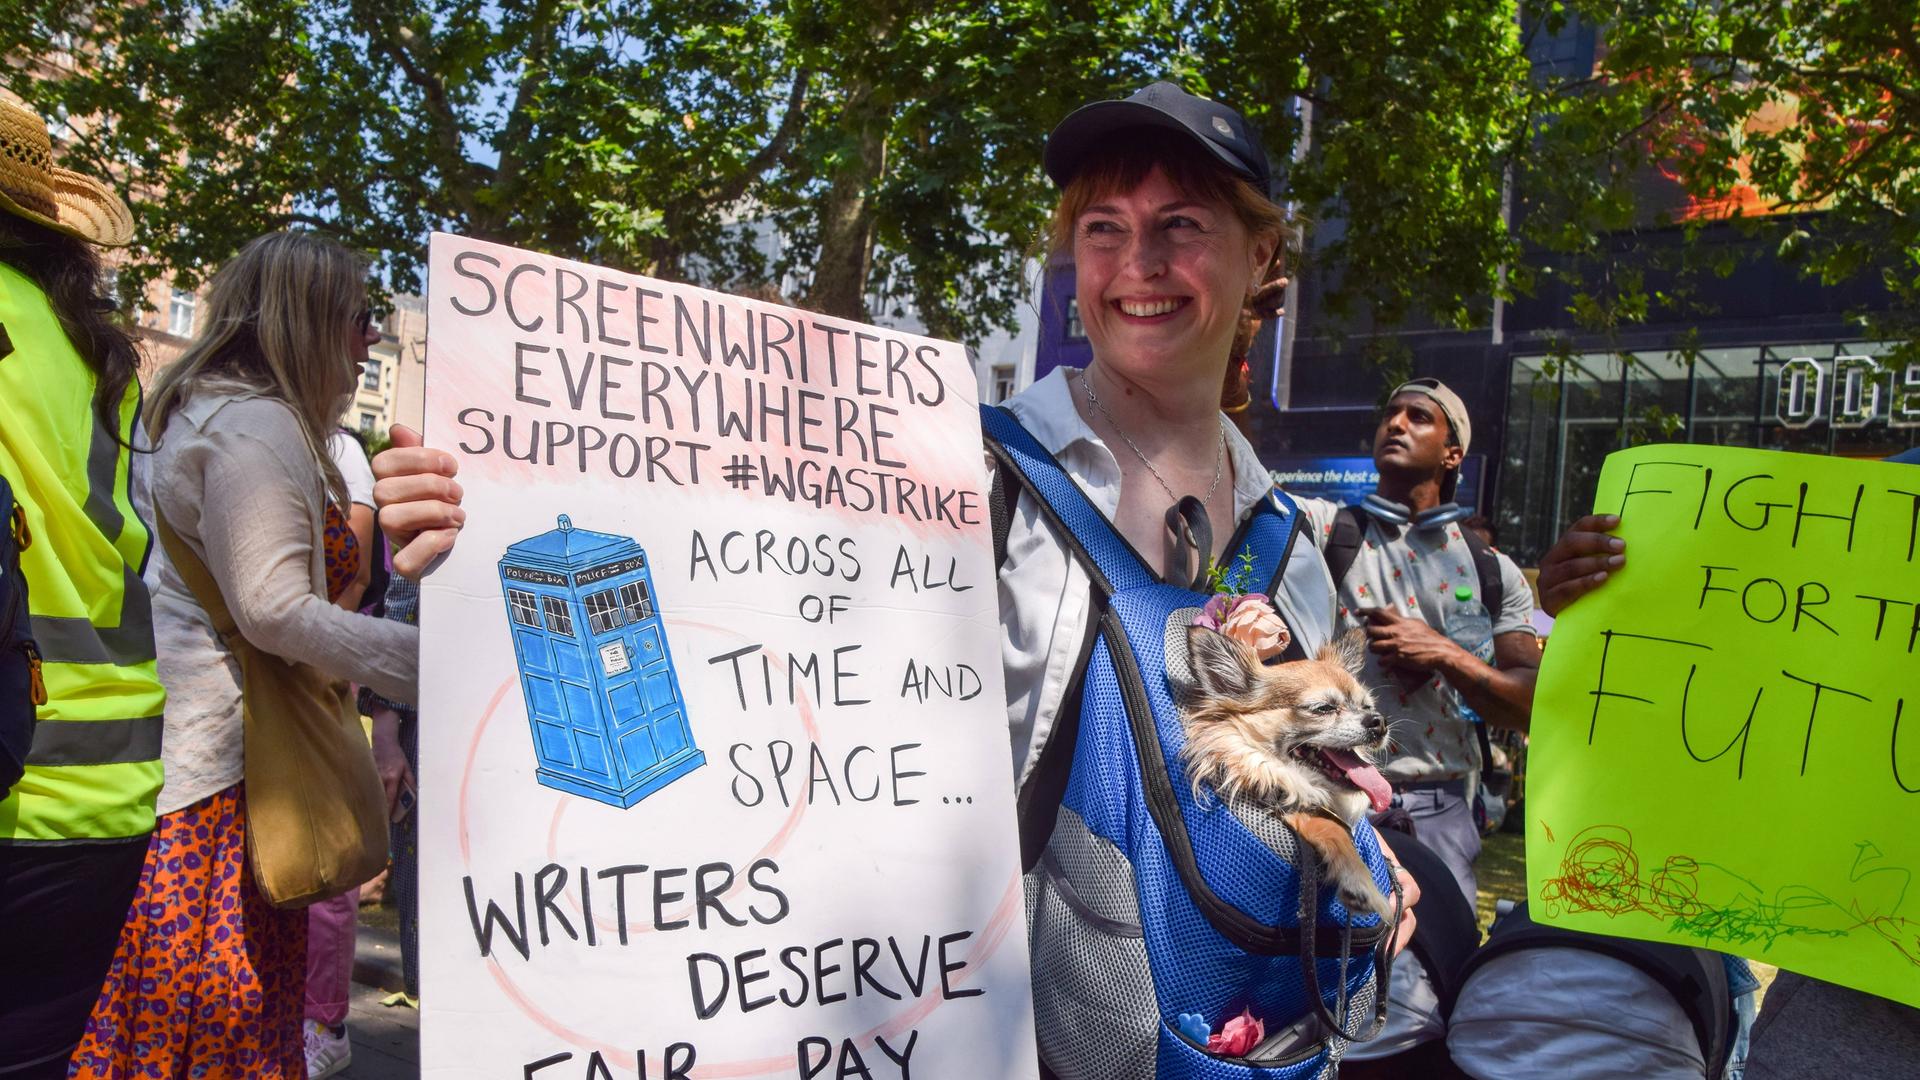 Eine Frau hält ein Transparent hoch, auf dem steht: "Drehbuchautoren in aller Welt, unterstützt den #WGA-Streik. Drehbuchschreiber verdienen eine faire Bezahlung." Im Hintergrund sind weitere Menschen mit Plakaten zu sehen.